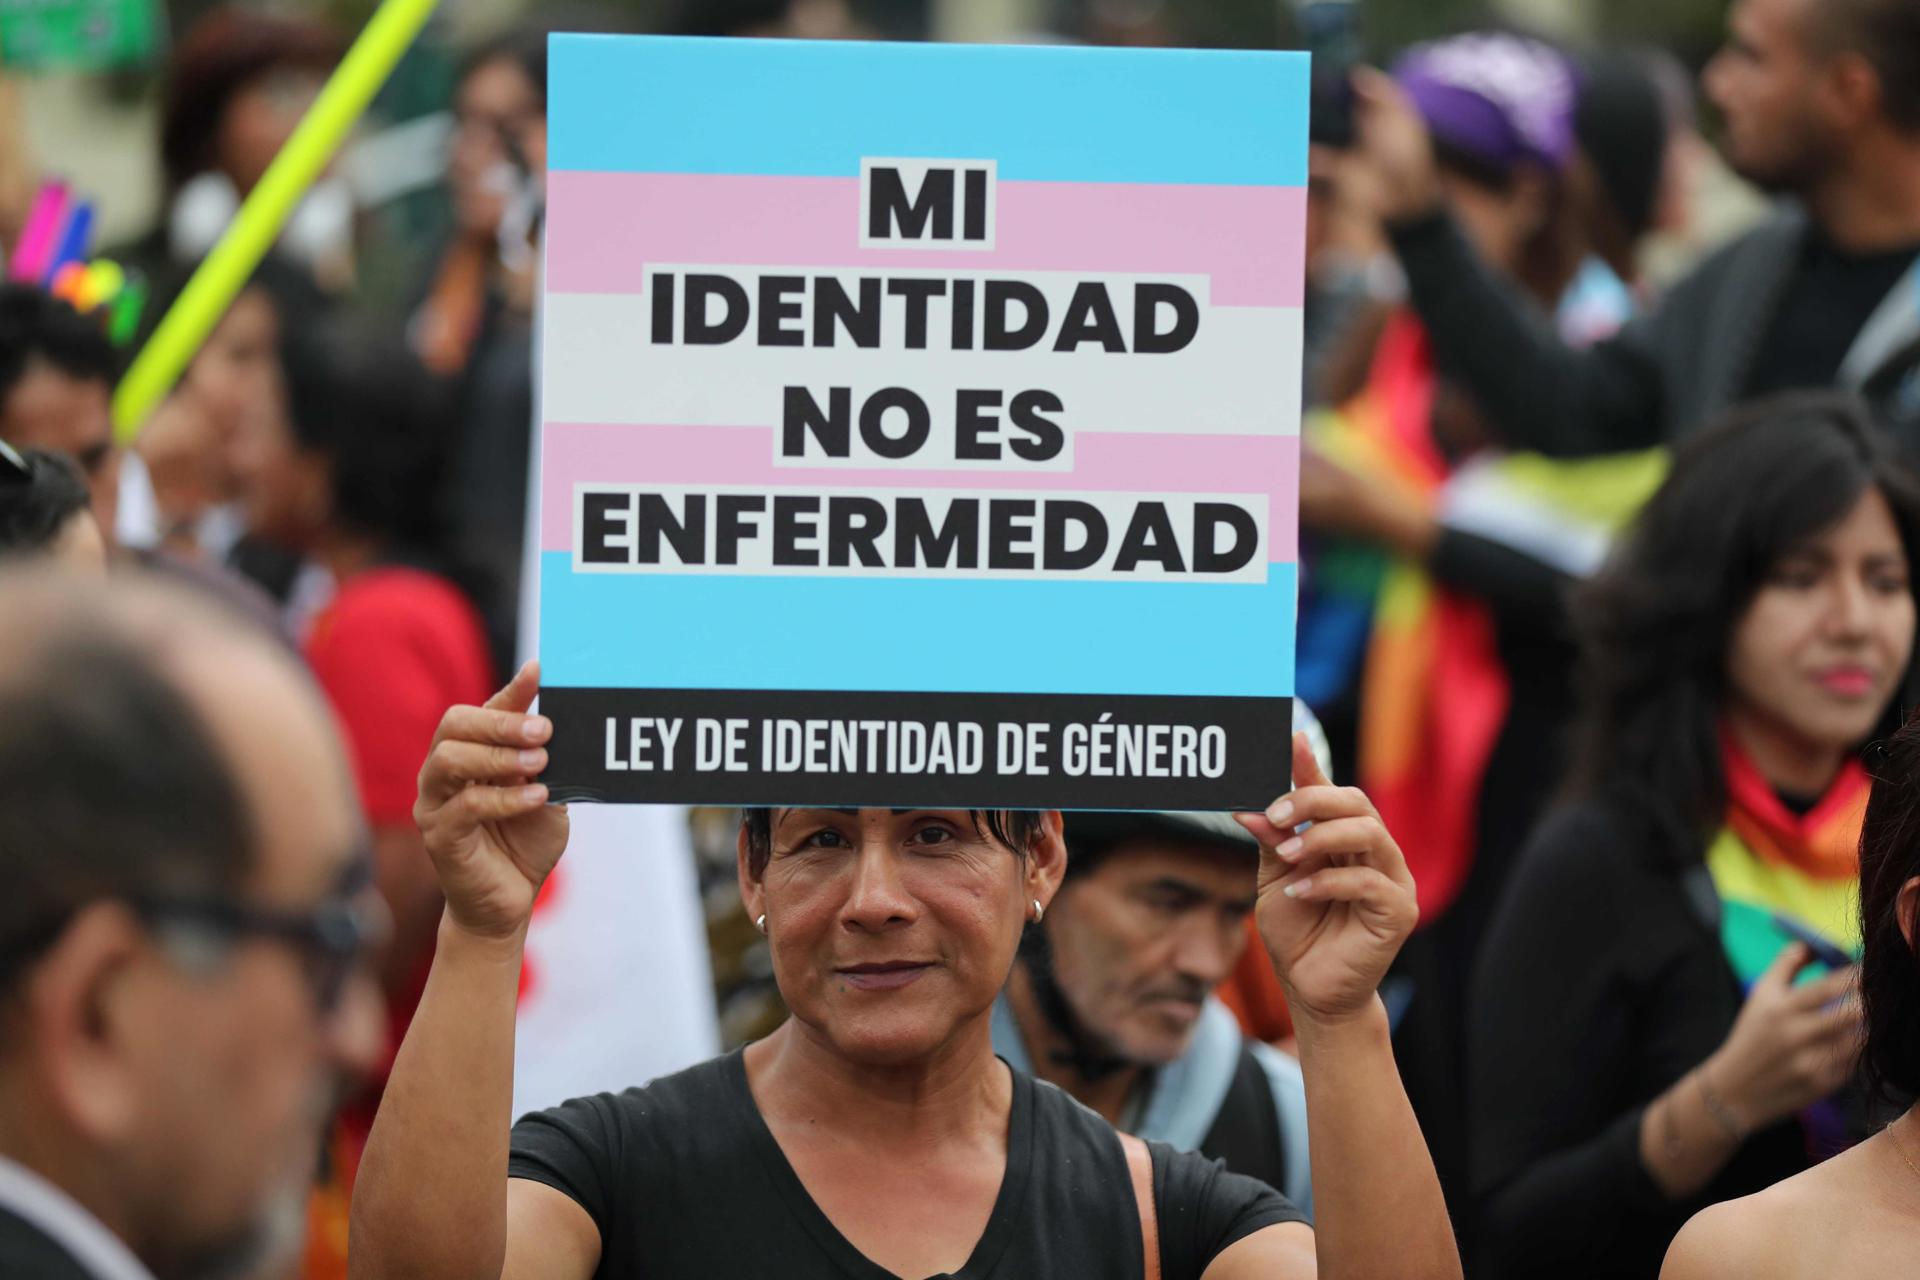 Manifestantes protestan contra la actualización del Plan Esencial de Aseguramiento en Salud (PEAS) en el que se incluyó el "transexualismo, el transvestismo de rol dual y el trastorno de la identidad de género en la niñez" como enfermedades de salud mental, este viernes frente al Ministerio de Salud en Lima (Perú). EFE/ Paolo Aguilar